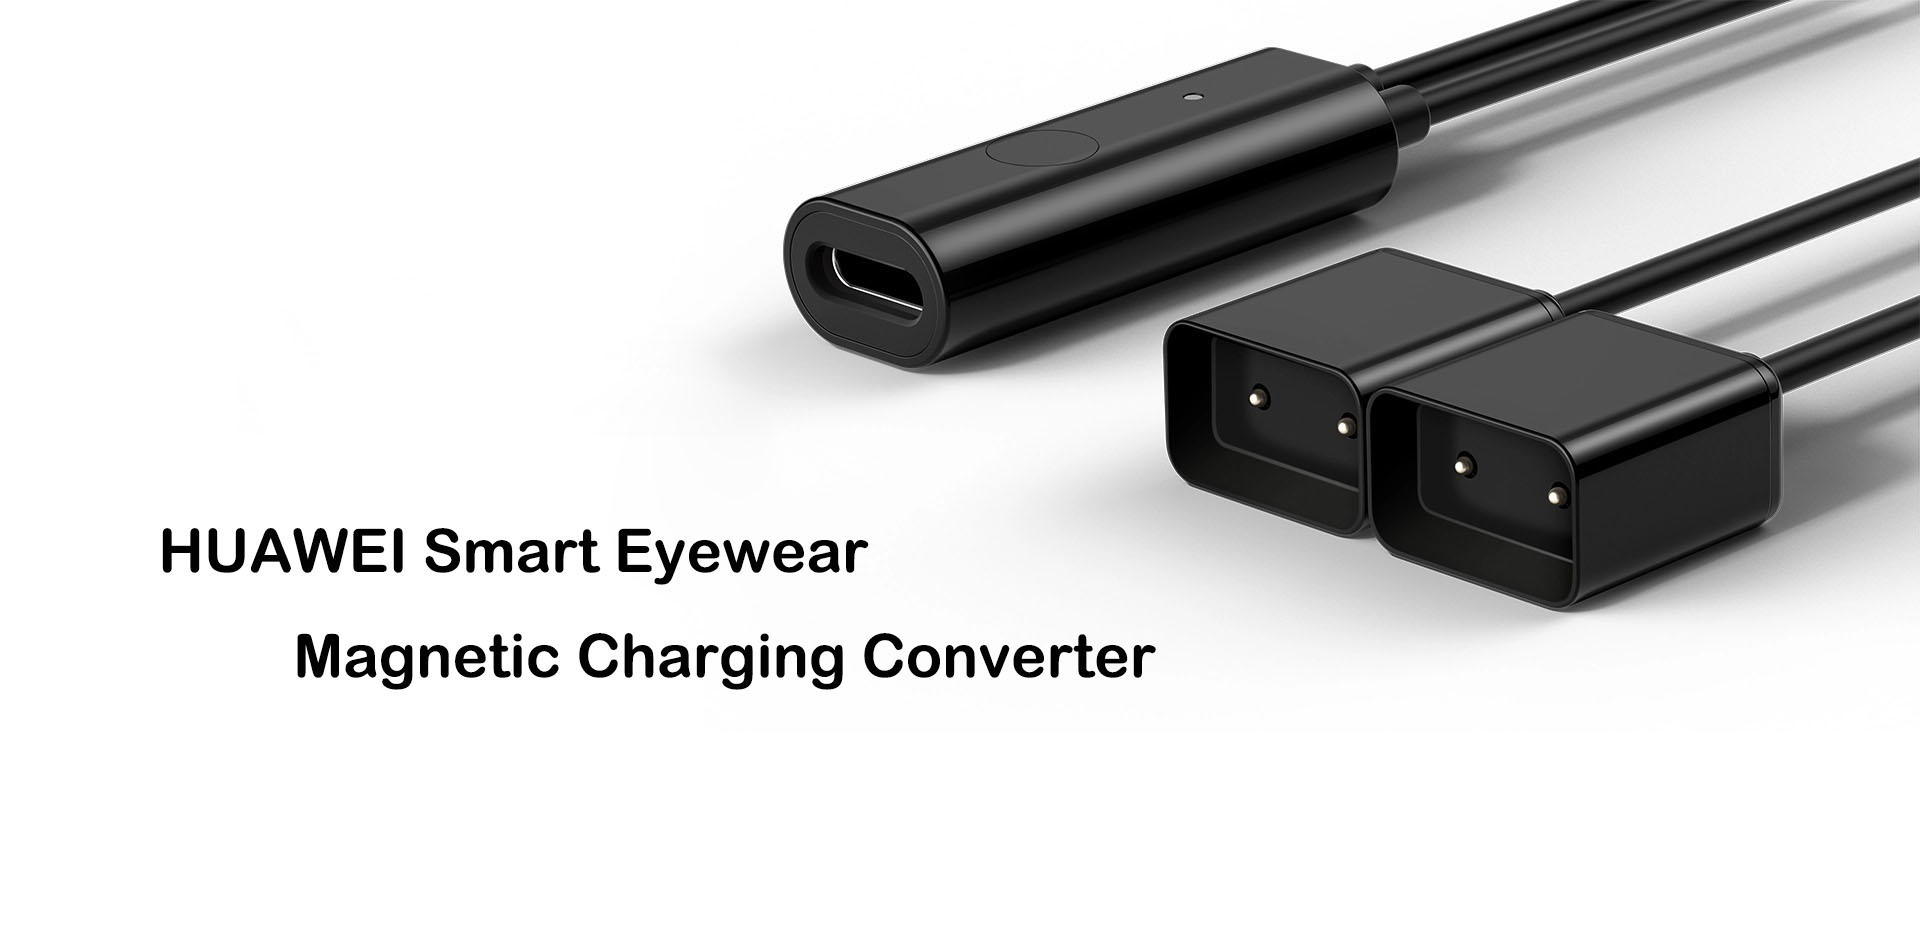 HUAWEI Smart Eyewear Magnetic Charging Converter